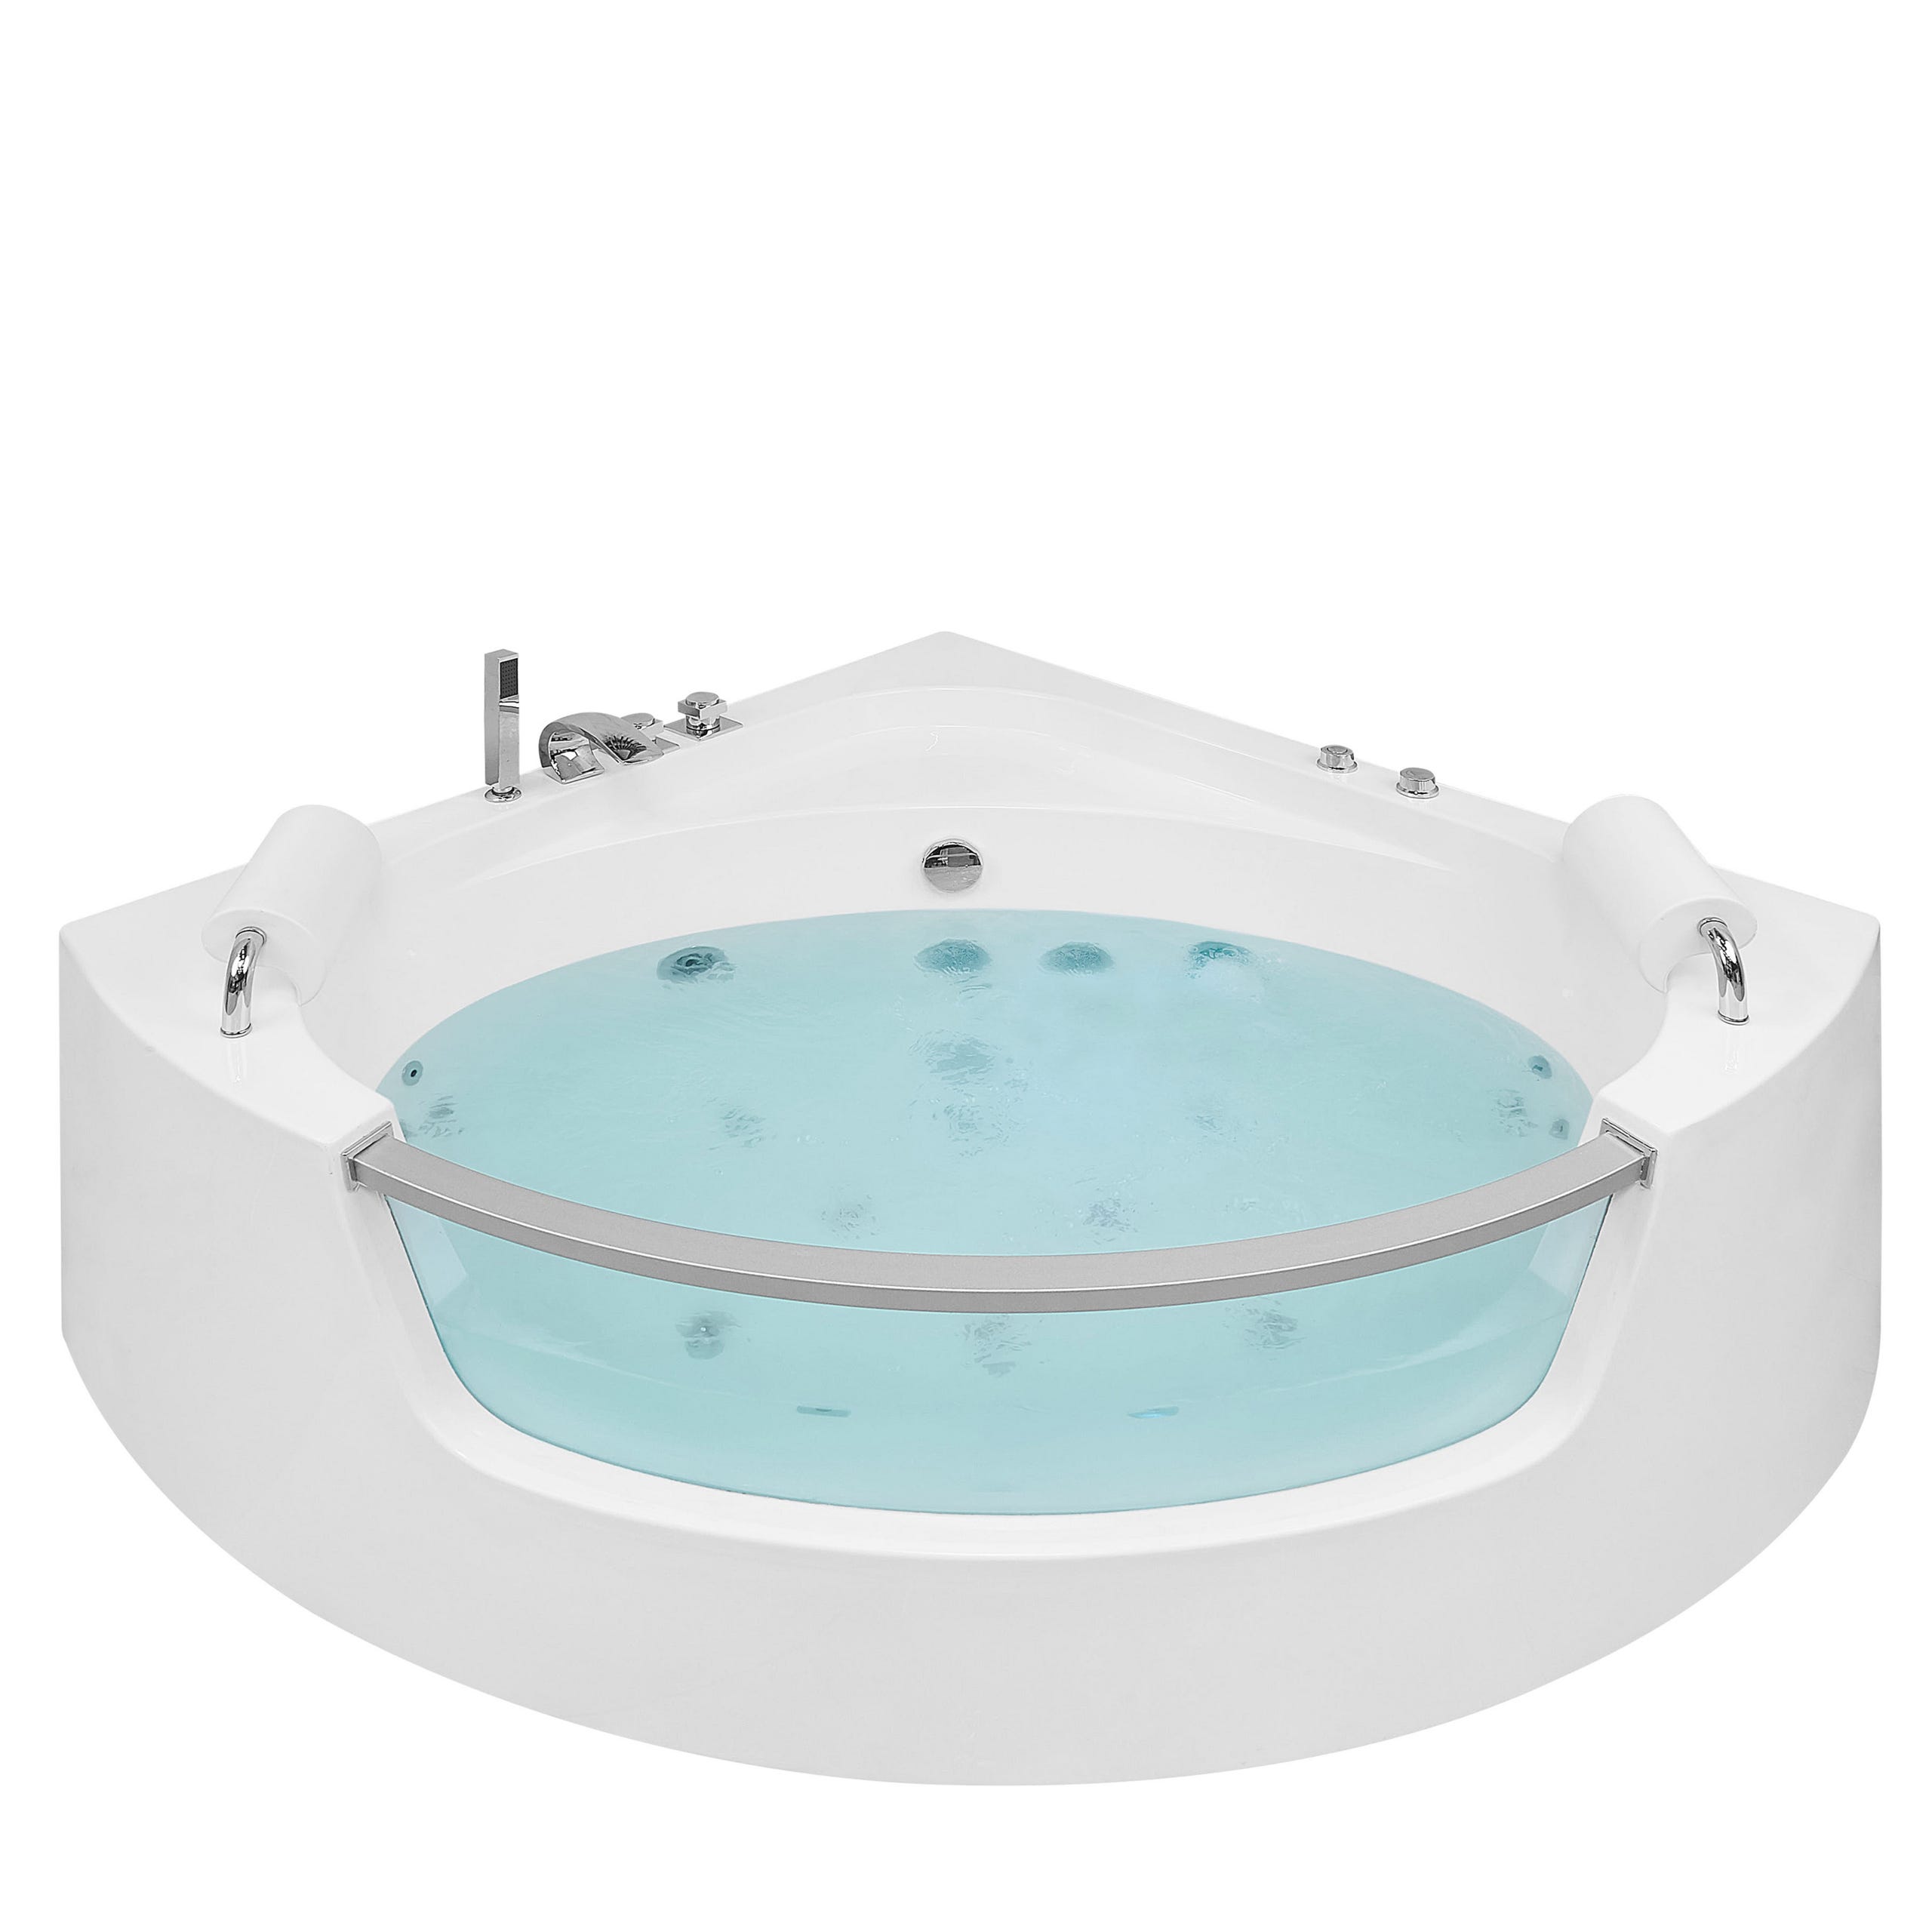 Bañera de hidromasaje esquinera blanca LED 210 x 145 cm MONACO